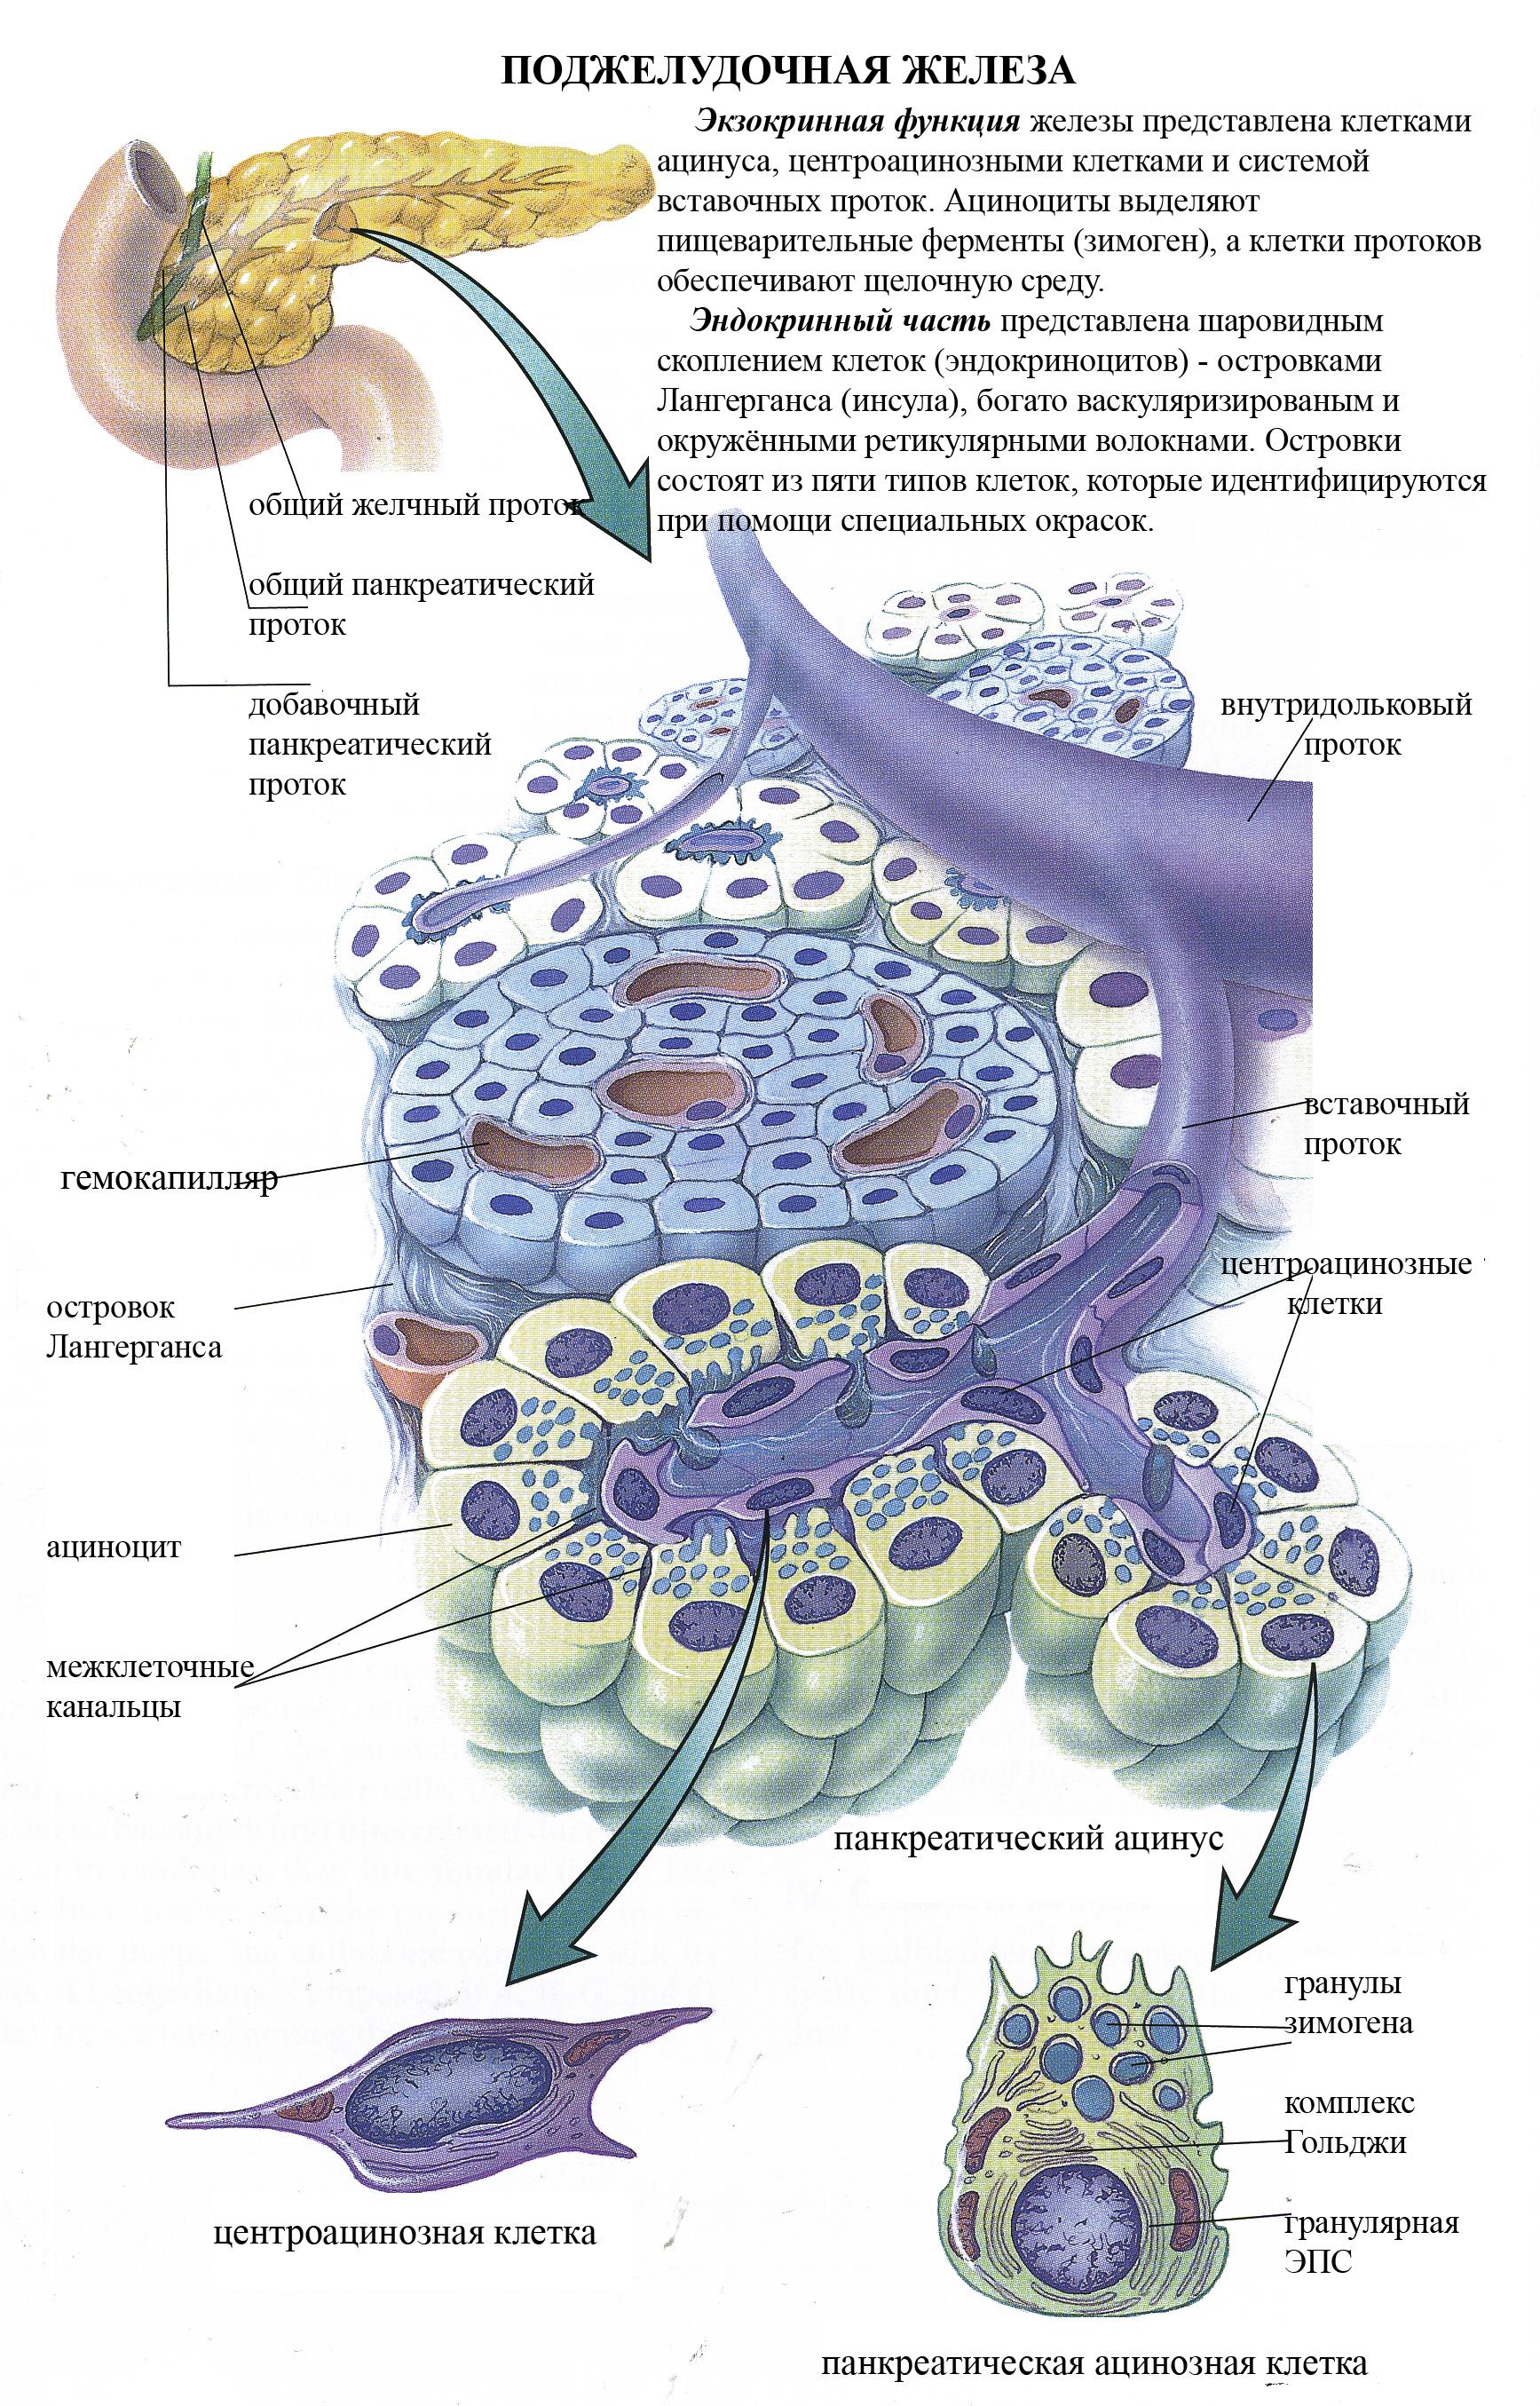 Б клетки поджелудочной железы вырабатывают